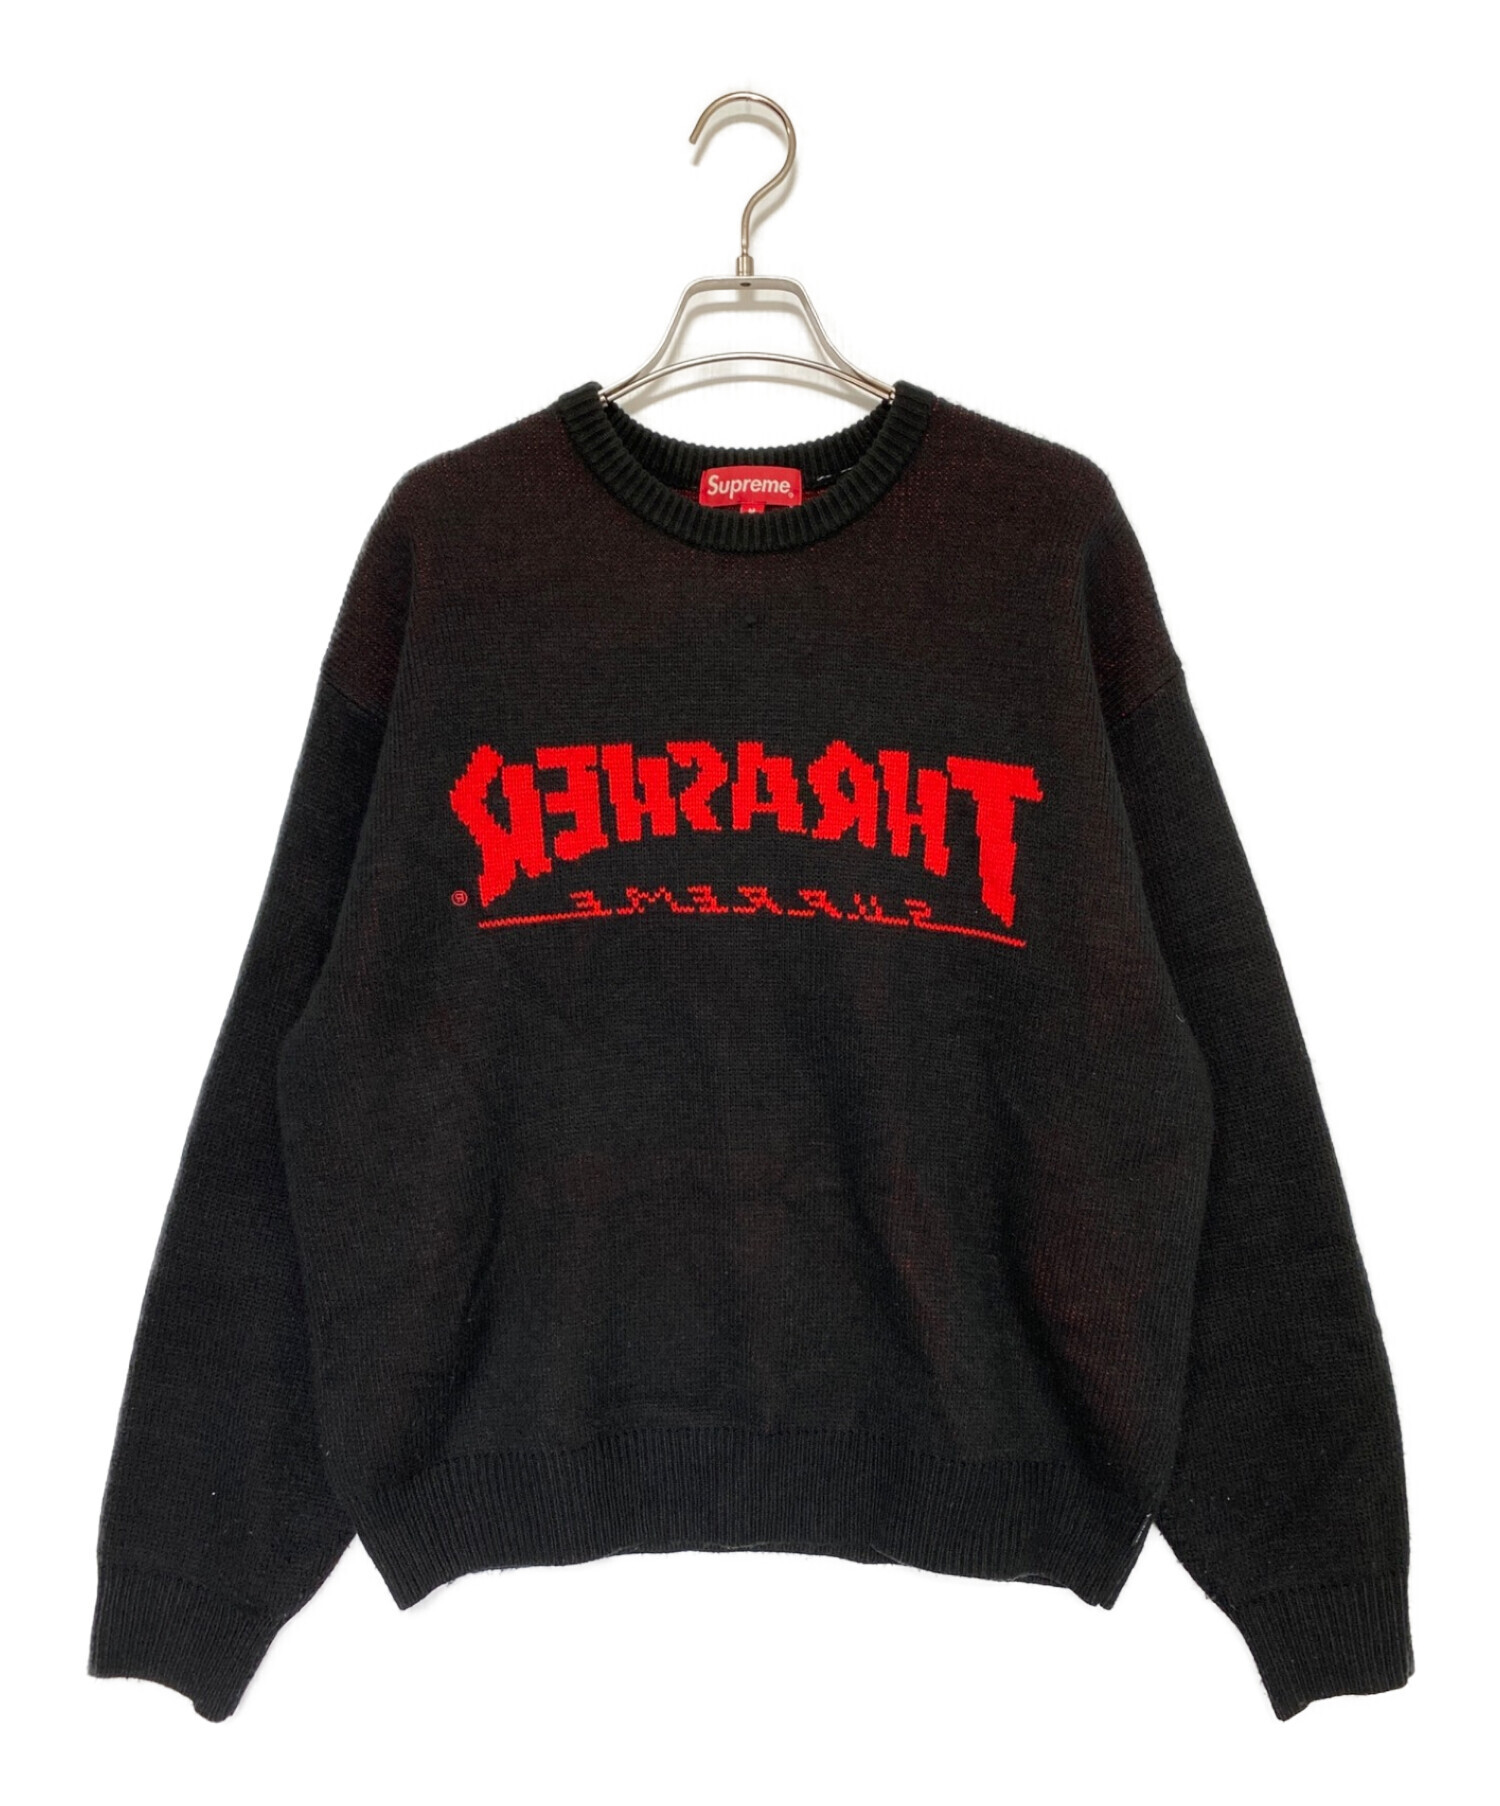 SUPREME (シュプリーム) THRASHER (スラッシャー) Sweater ブラック×レッド サイズ:M